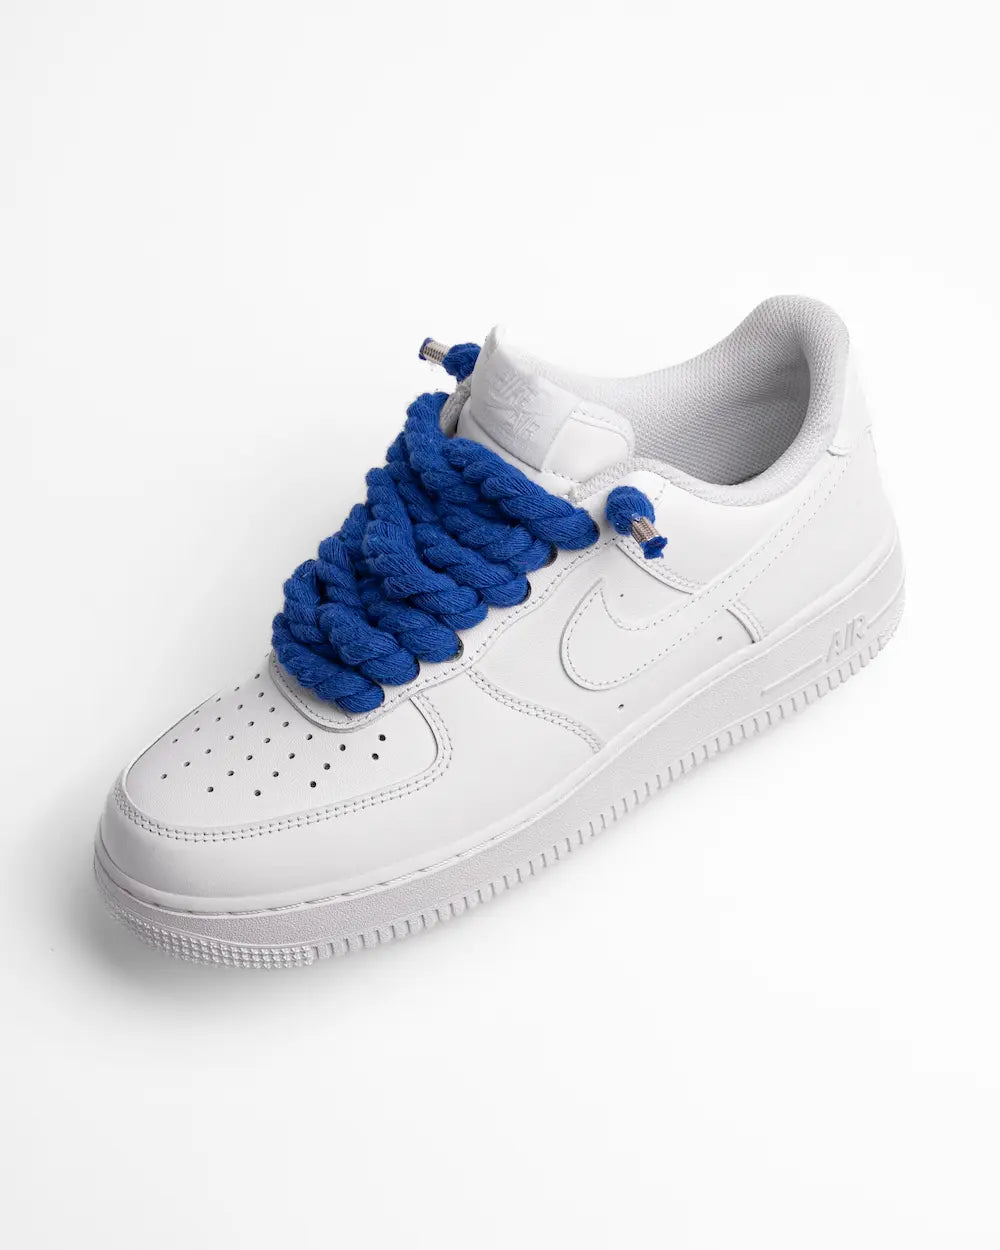 Nike Air Force 1 bianca personalizzata by SEDDYS con lacci in corda blu